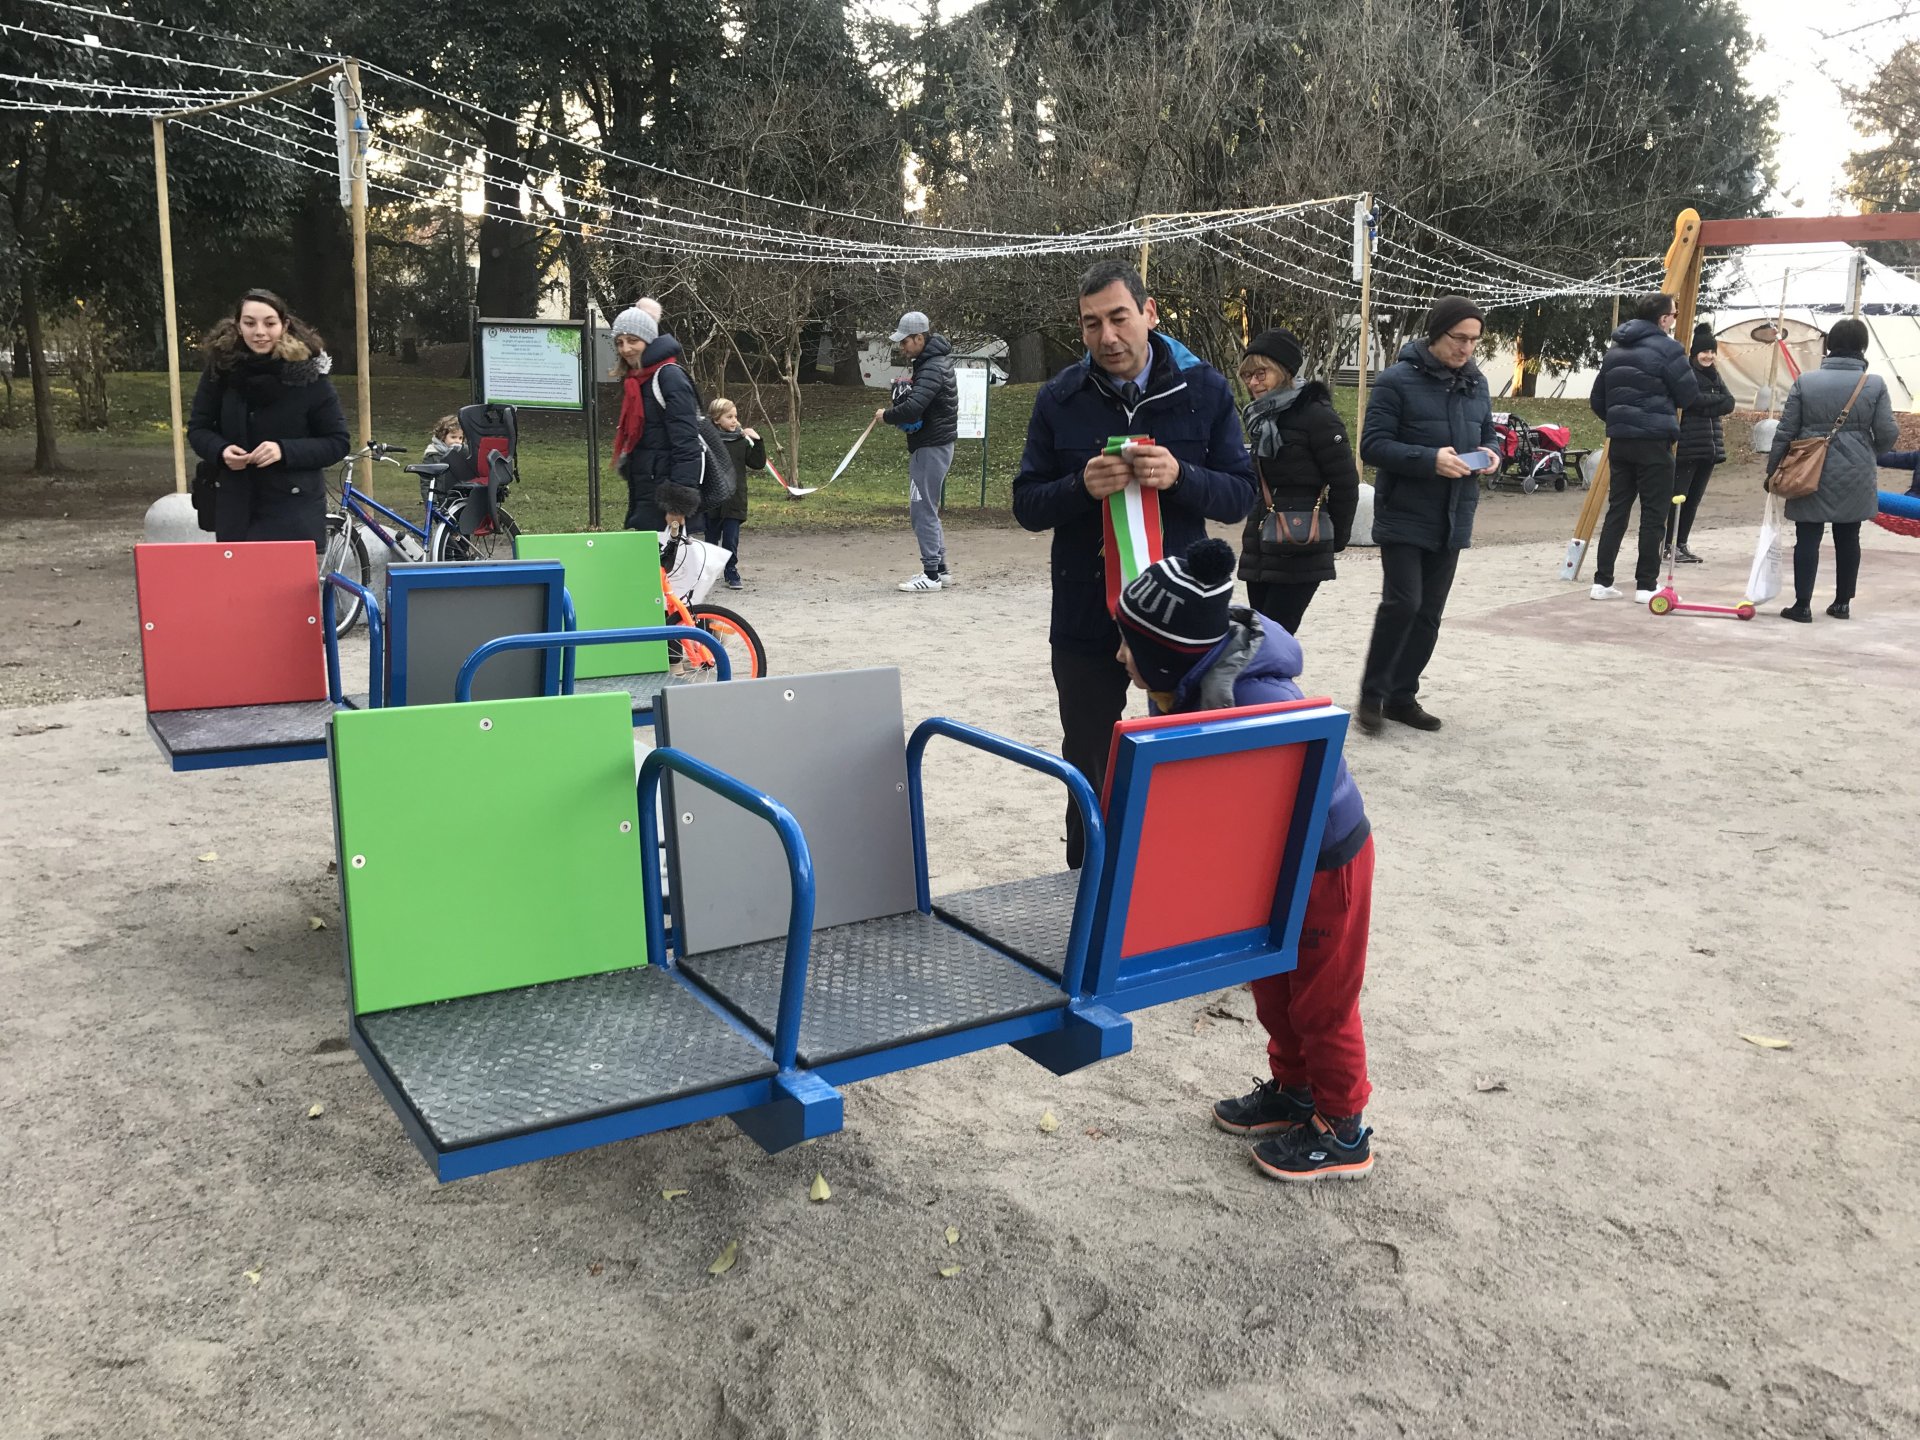 Vimercate inaugurazione con sindaco Francesco Sartini parco giochi inclusivo per bambini disabili nel parco Trotti